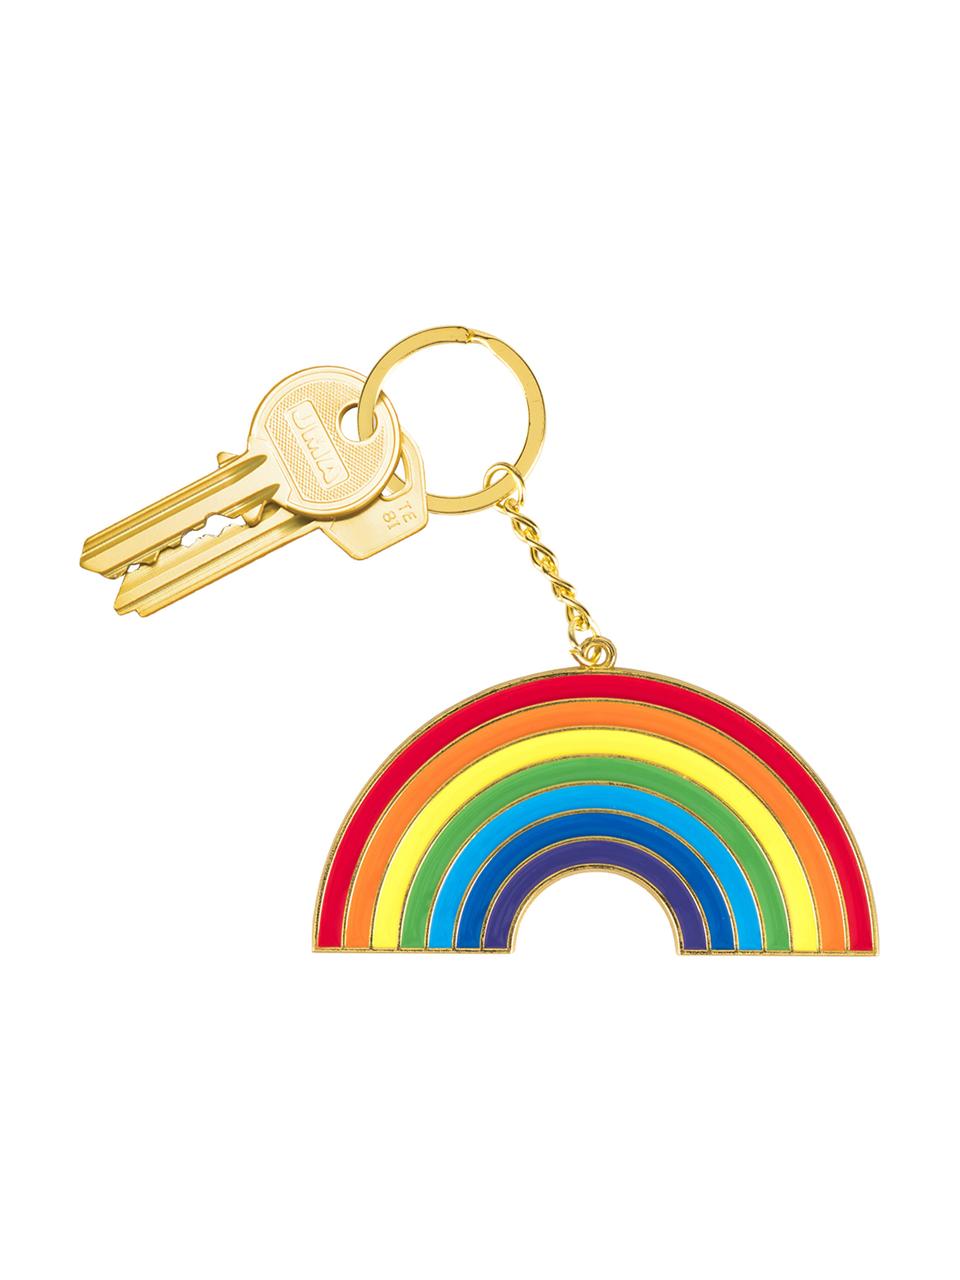 Schlüsselanhänger Rainbow, Stahl, beschichtet, Mehrfarbig, 7 x 15 cm